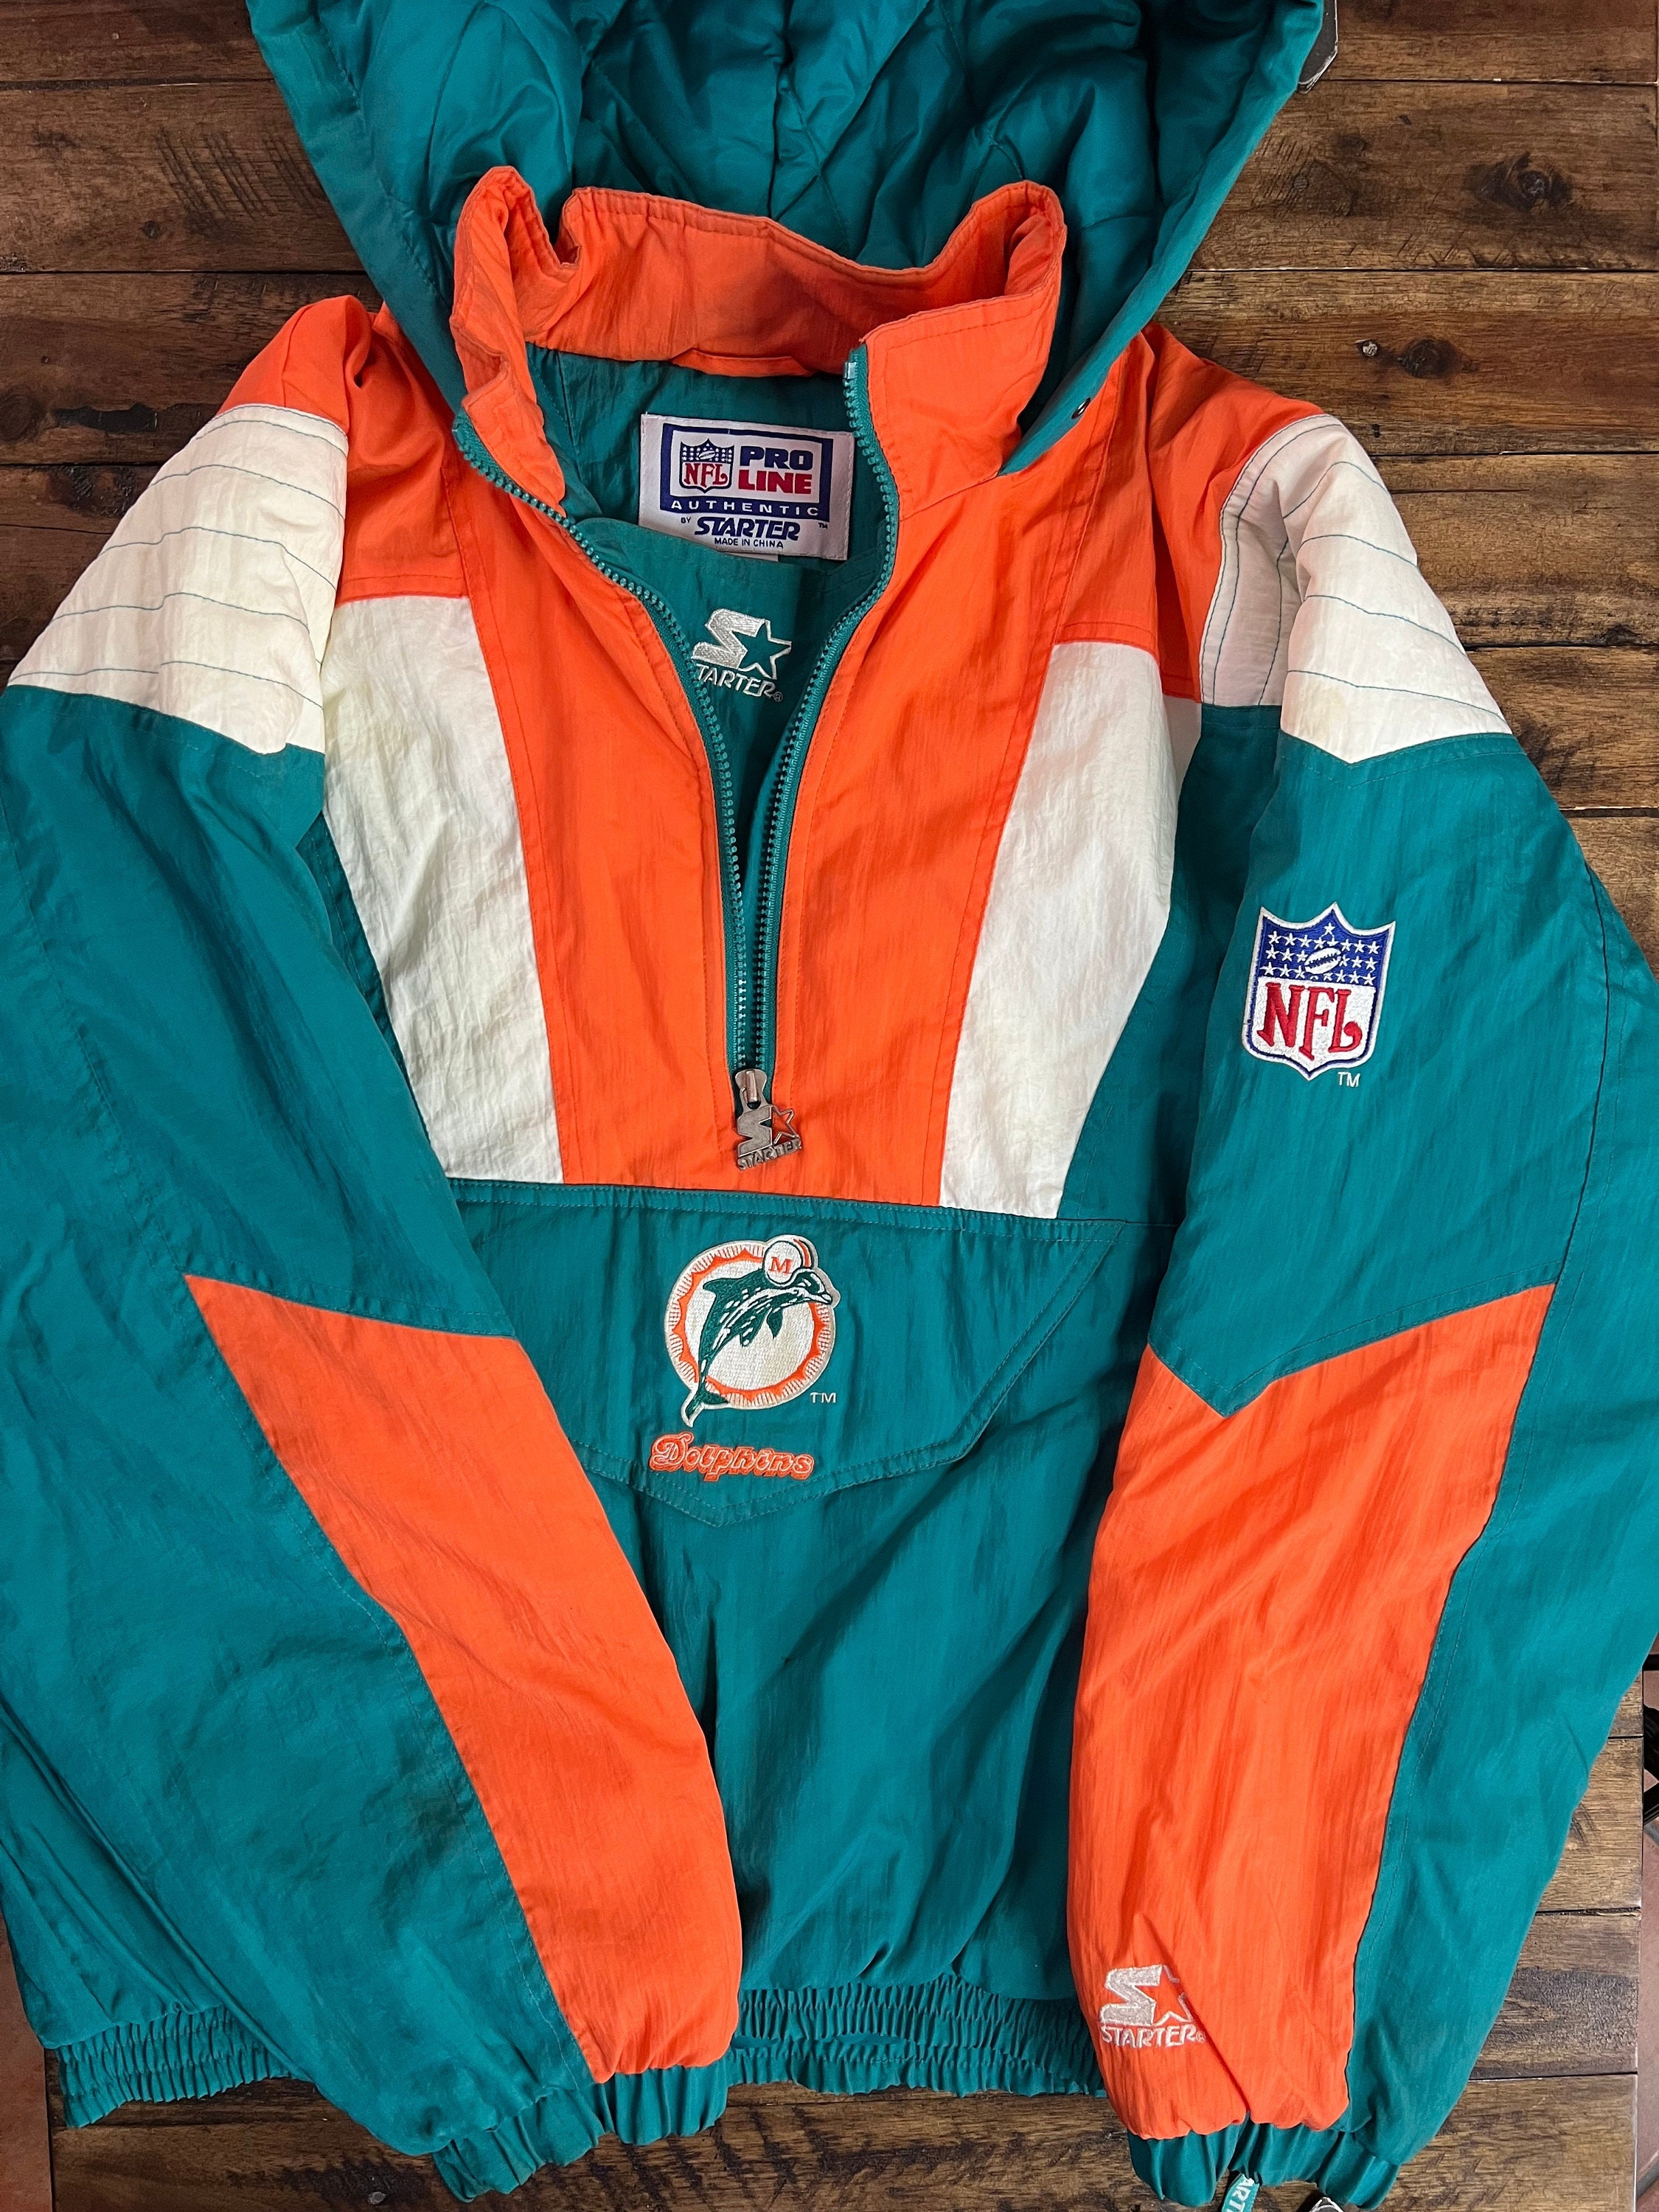 STARTER, Jackets & Coats, Vintage Miami Dolphins Nfl Starter Jacket  Pullover